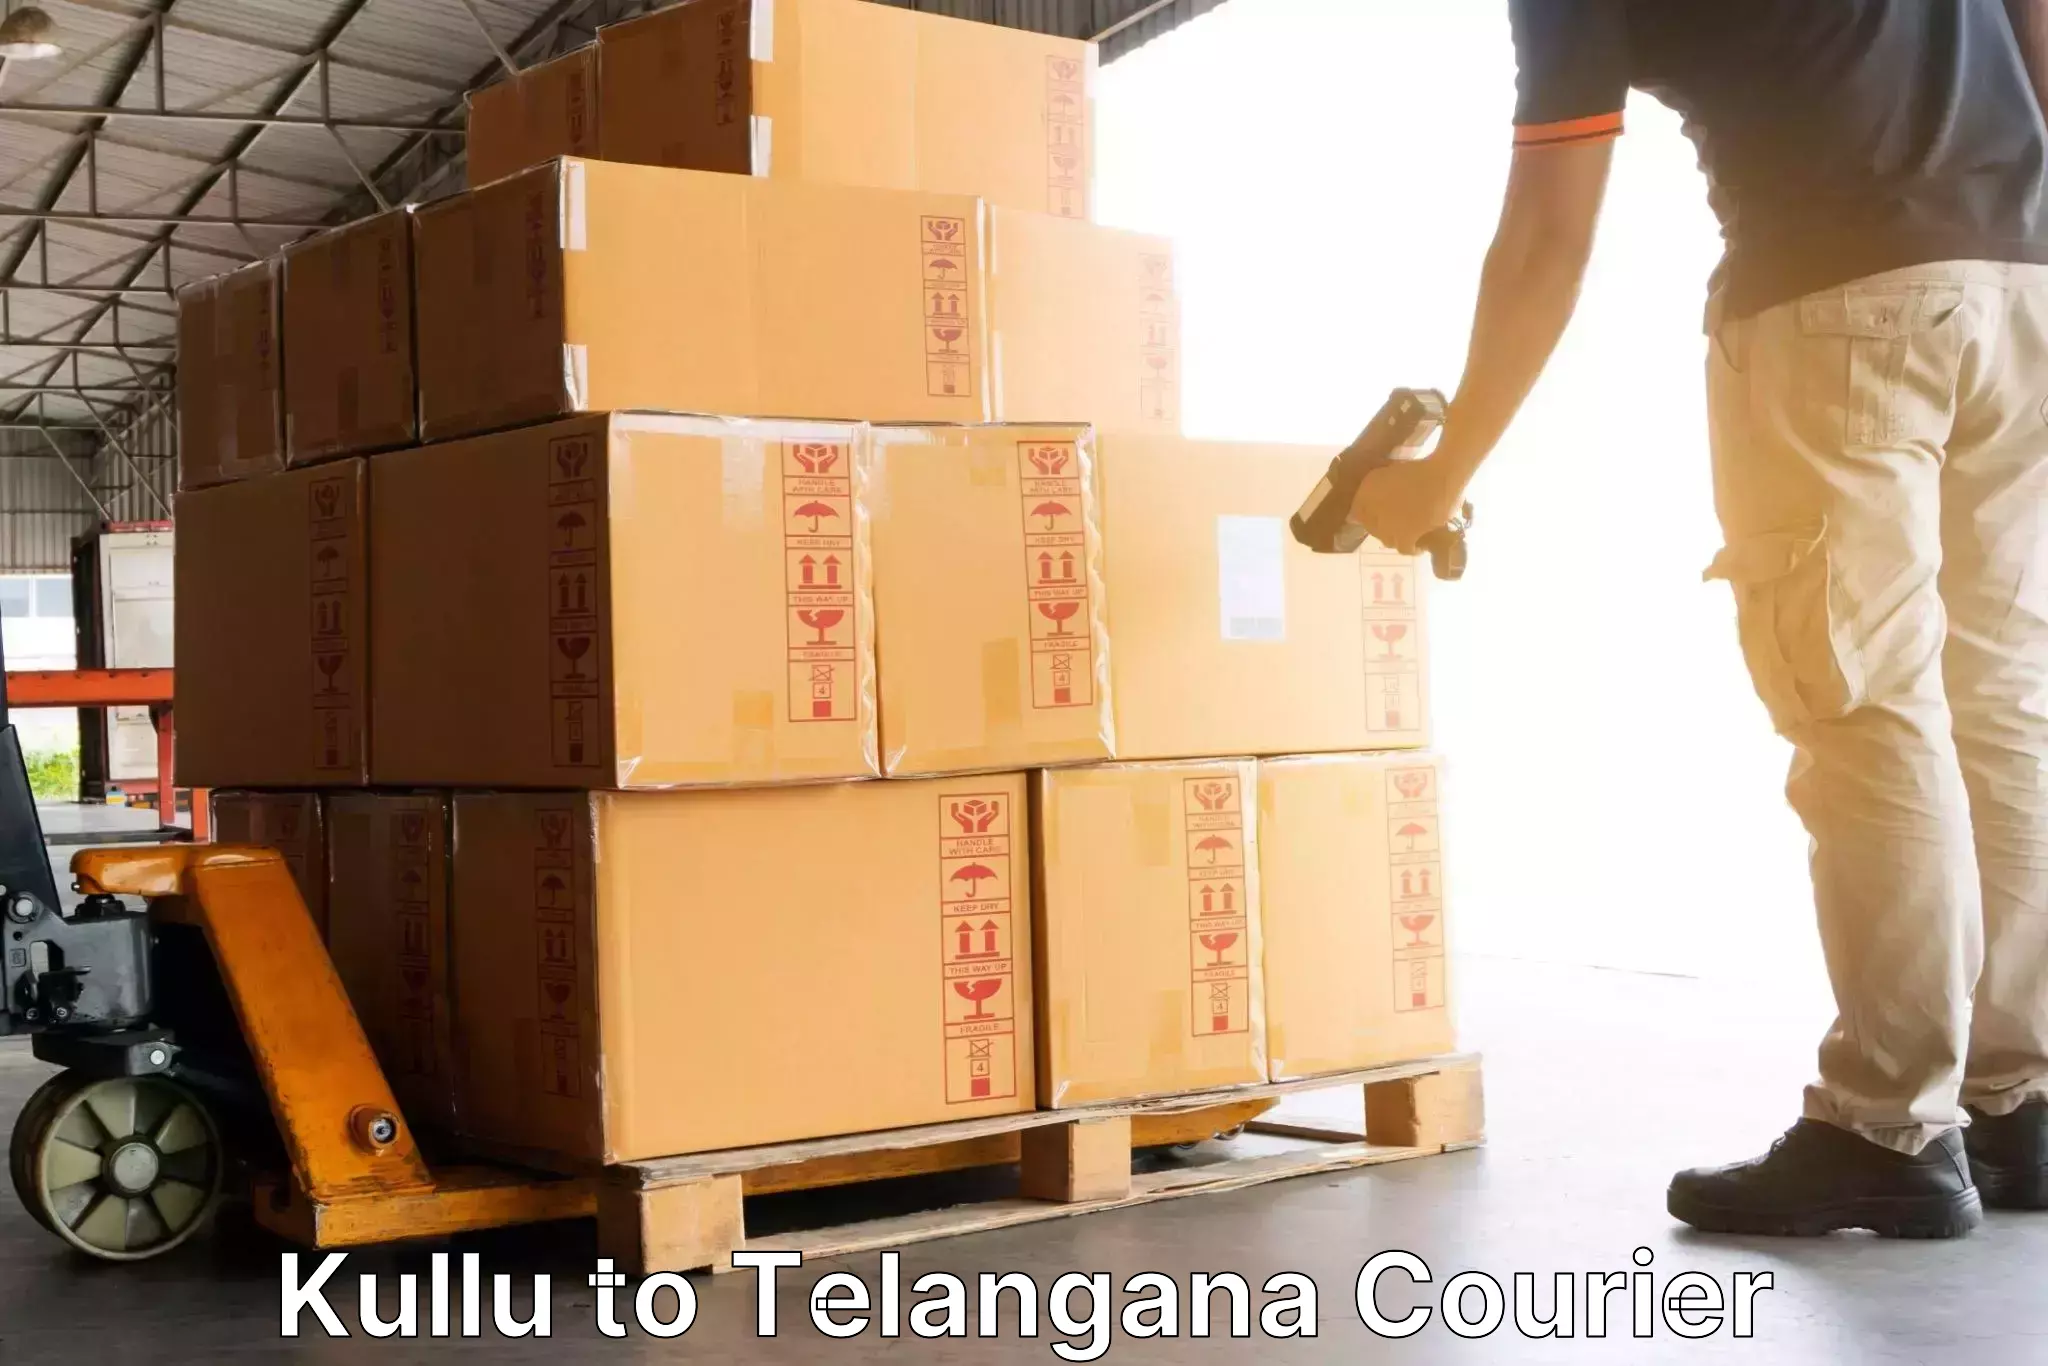 Seamless shipping experience Kullu to Manthani